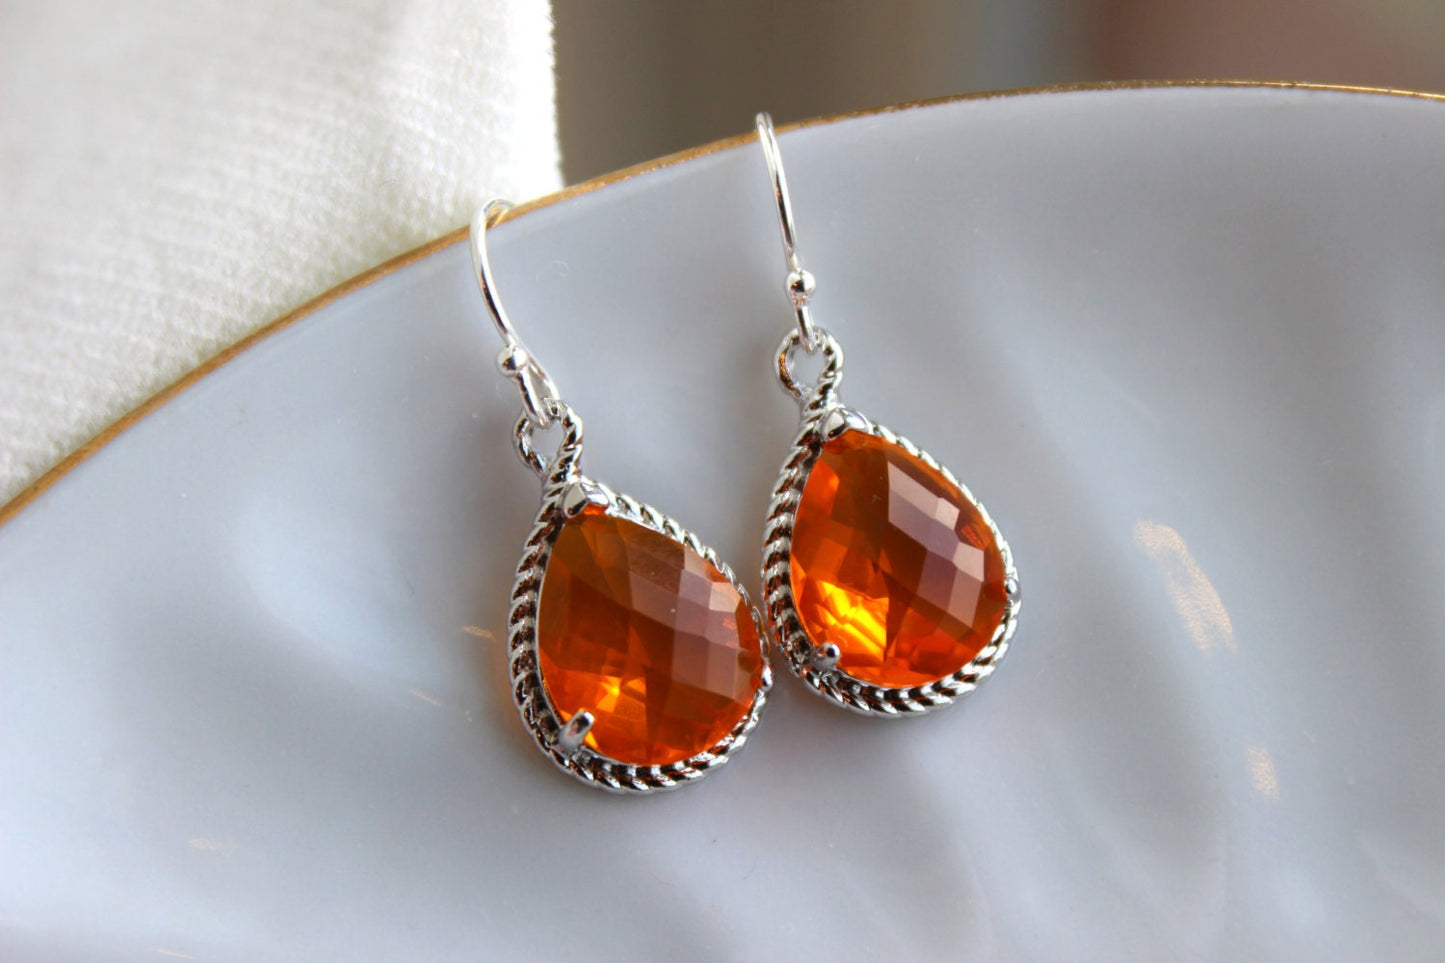 Silver Burnt Orange Earrings Amber Jewelry - Tangerine Bridesmaid Earrings Wedding Earrings Amber Bridesmaid Jewelry Orange Wedding Jewelry